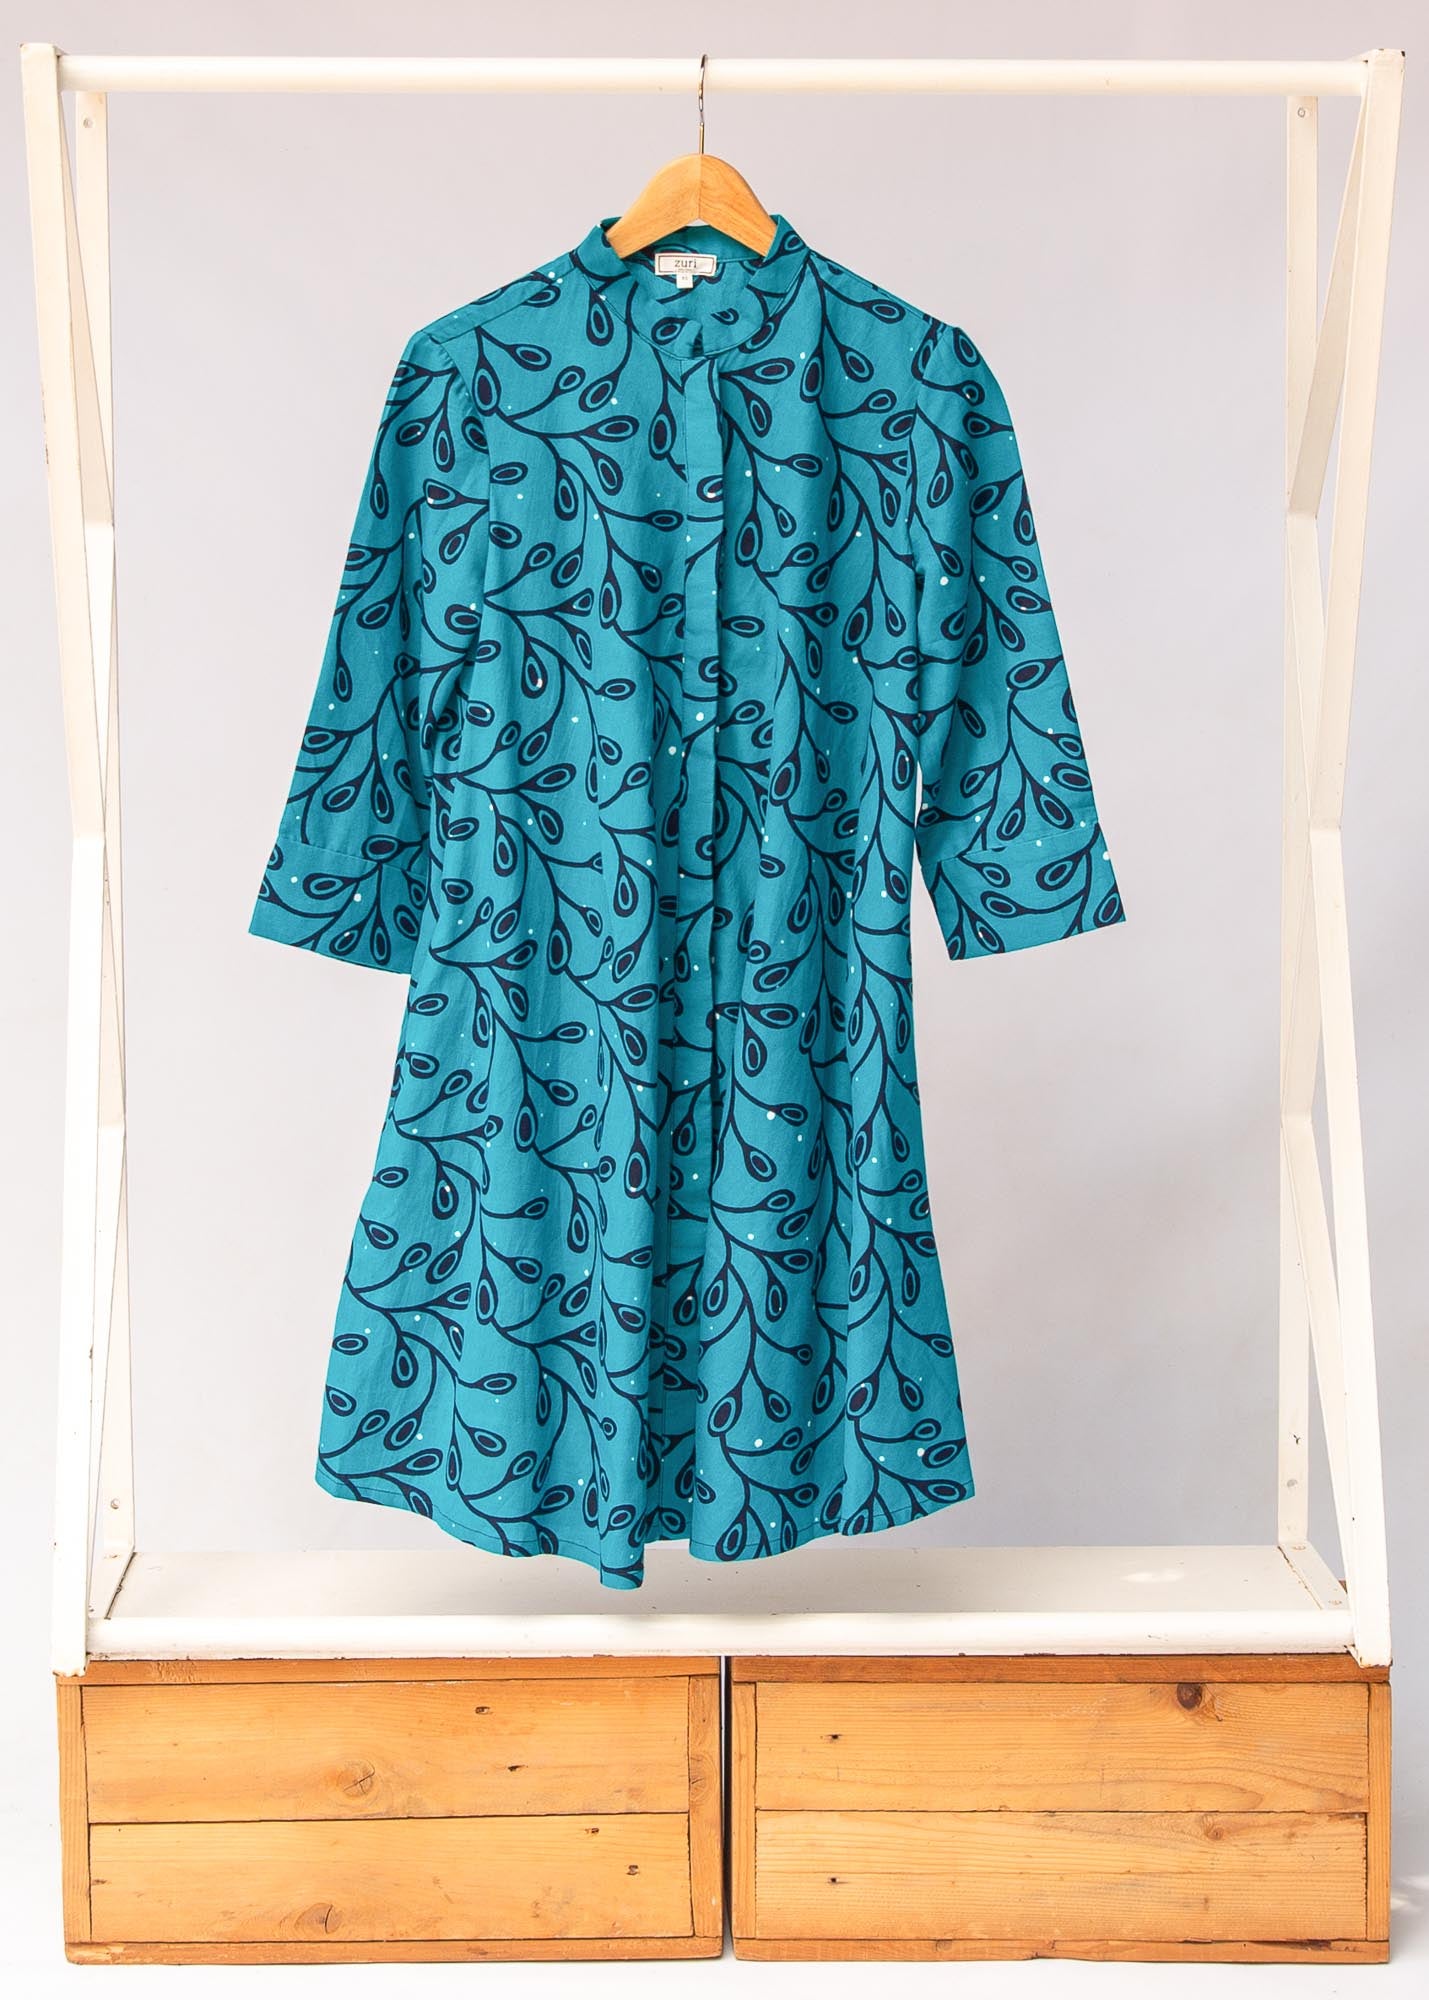 Display of teal leaf print dress